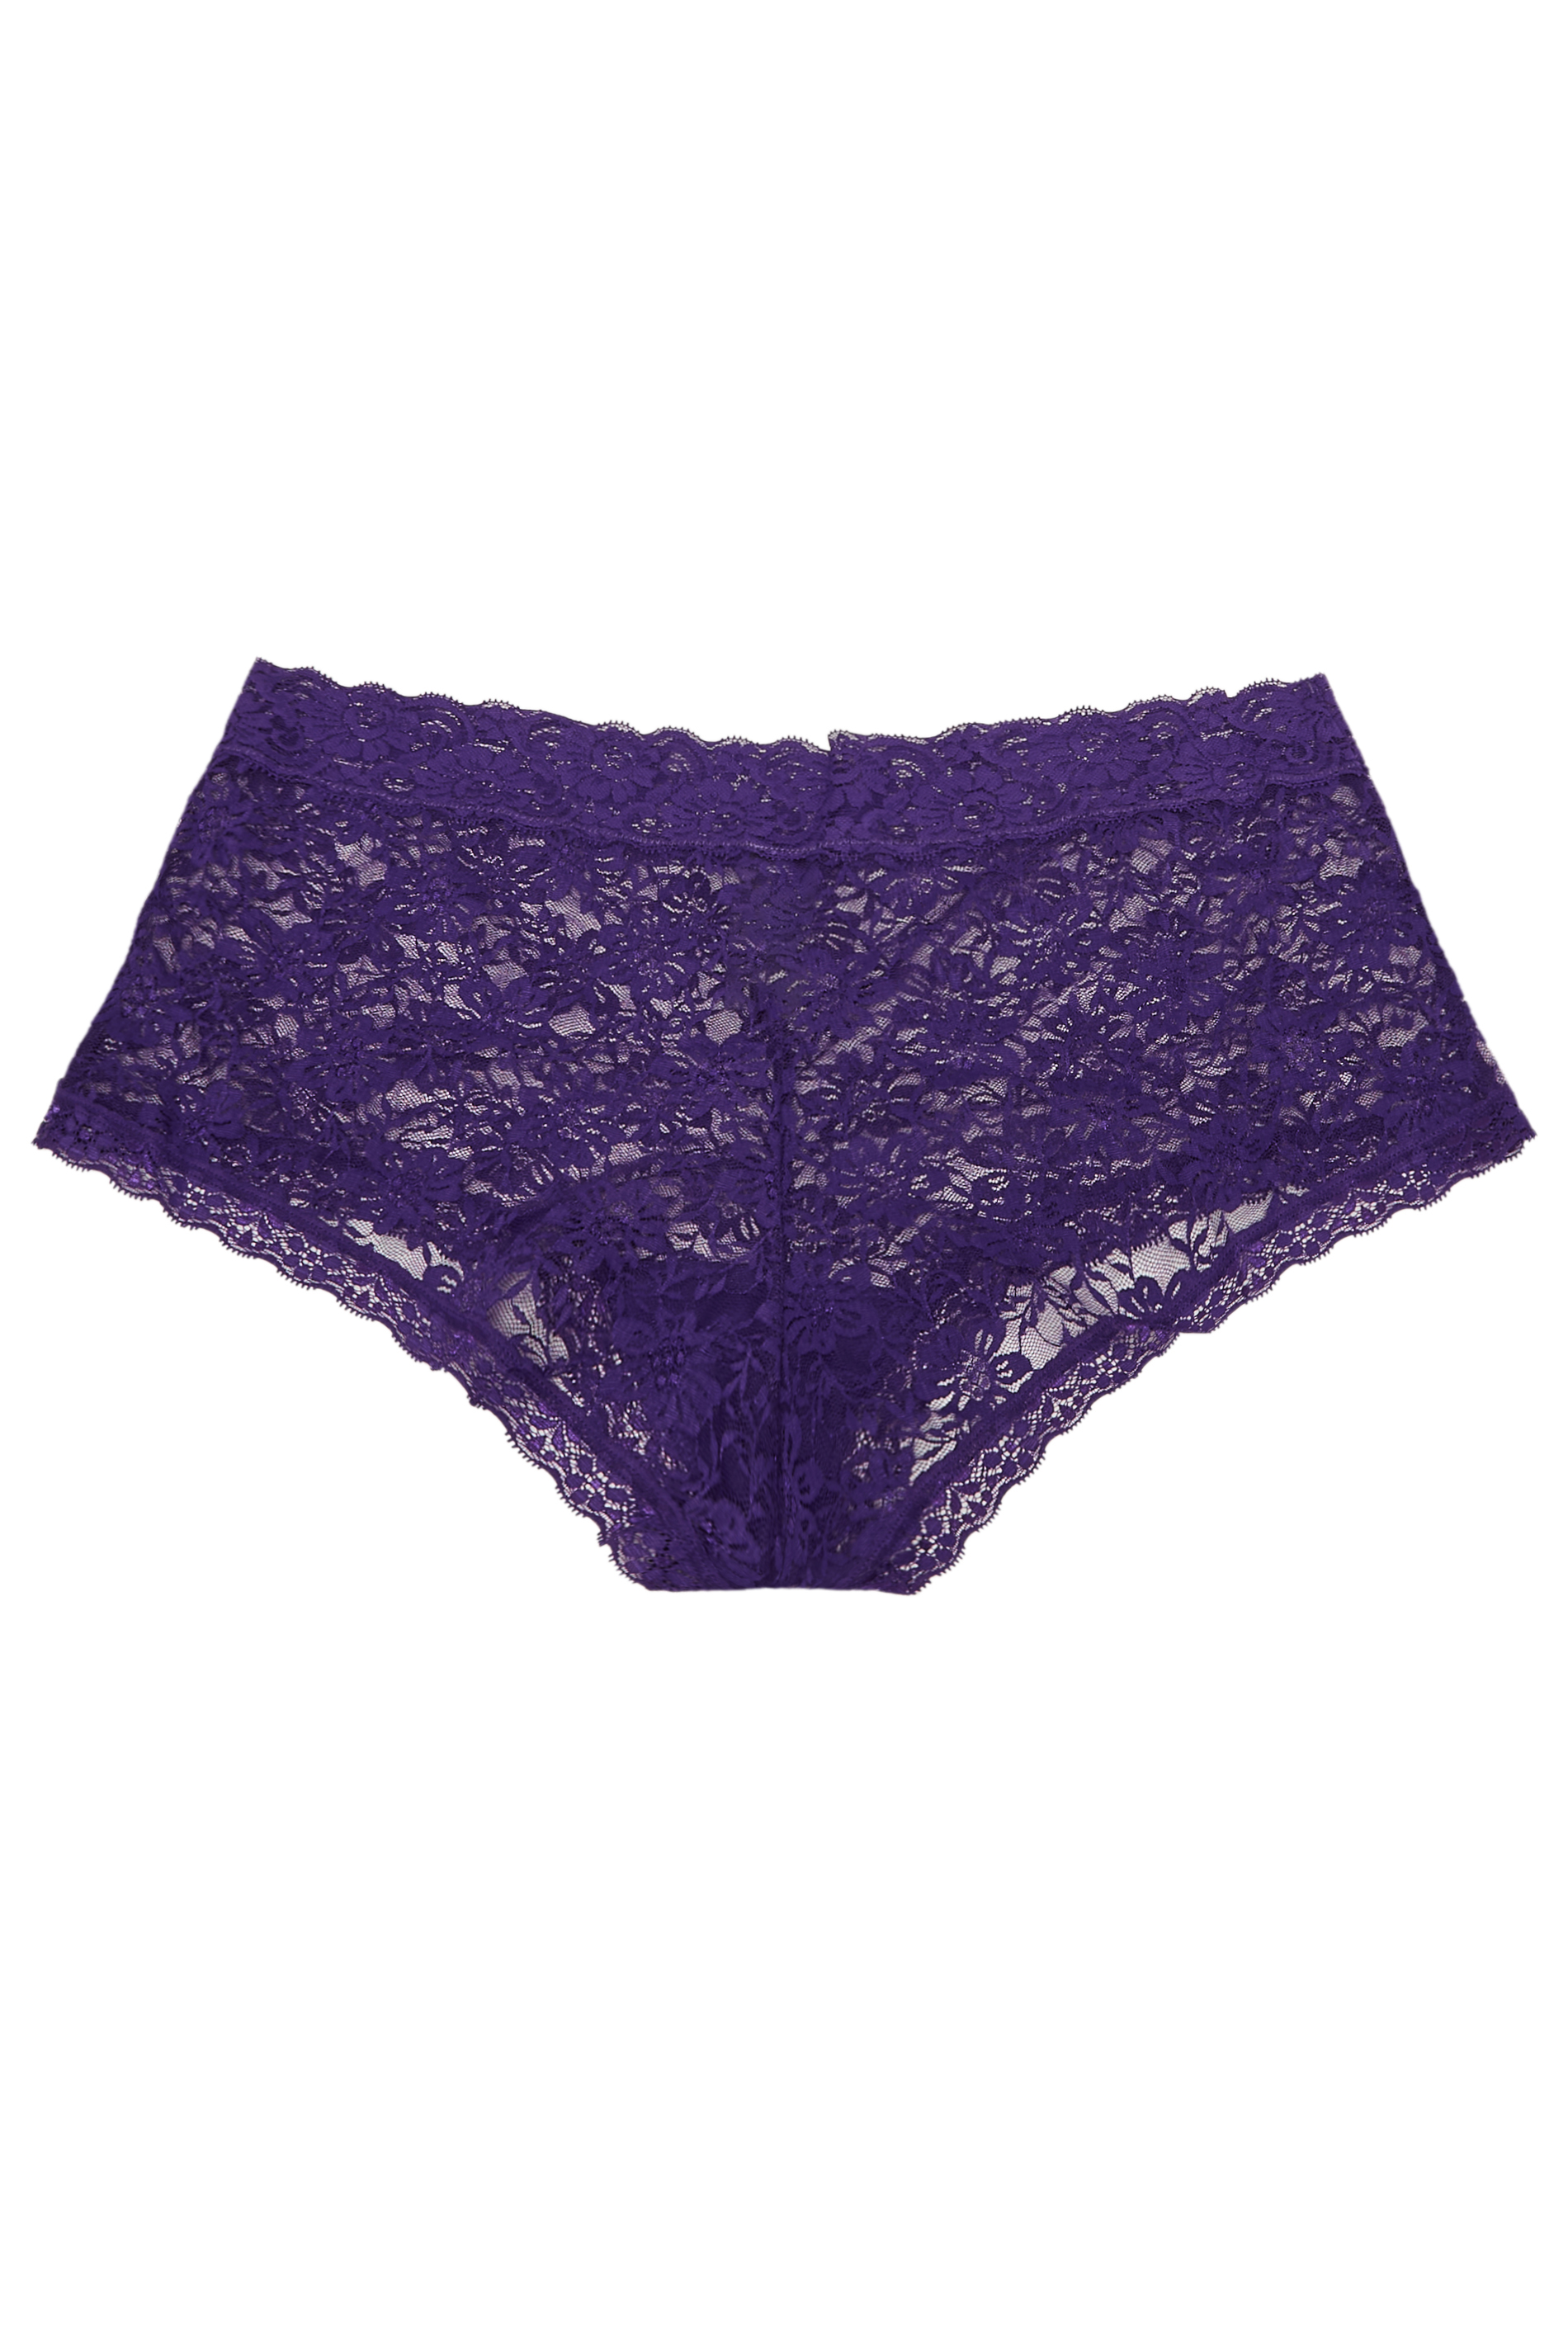 YOURS Curve Purple Floral Lace Shorts